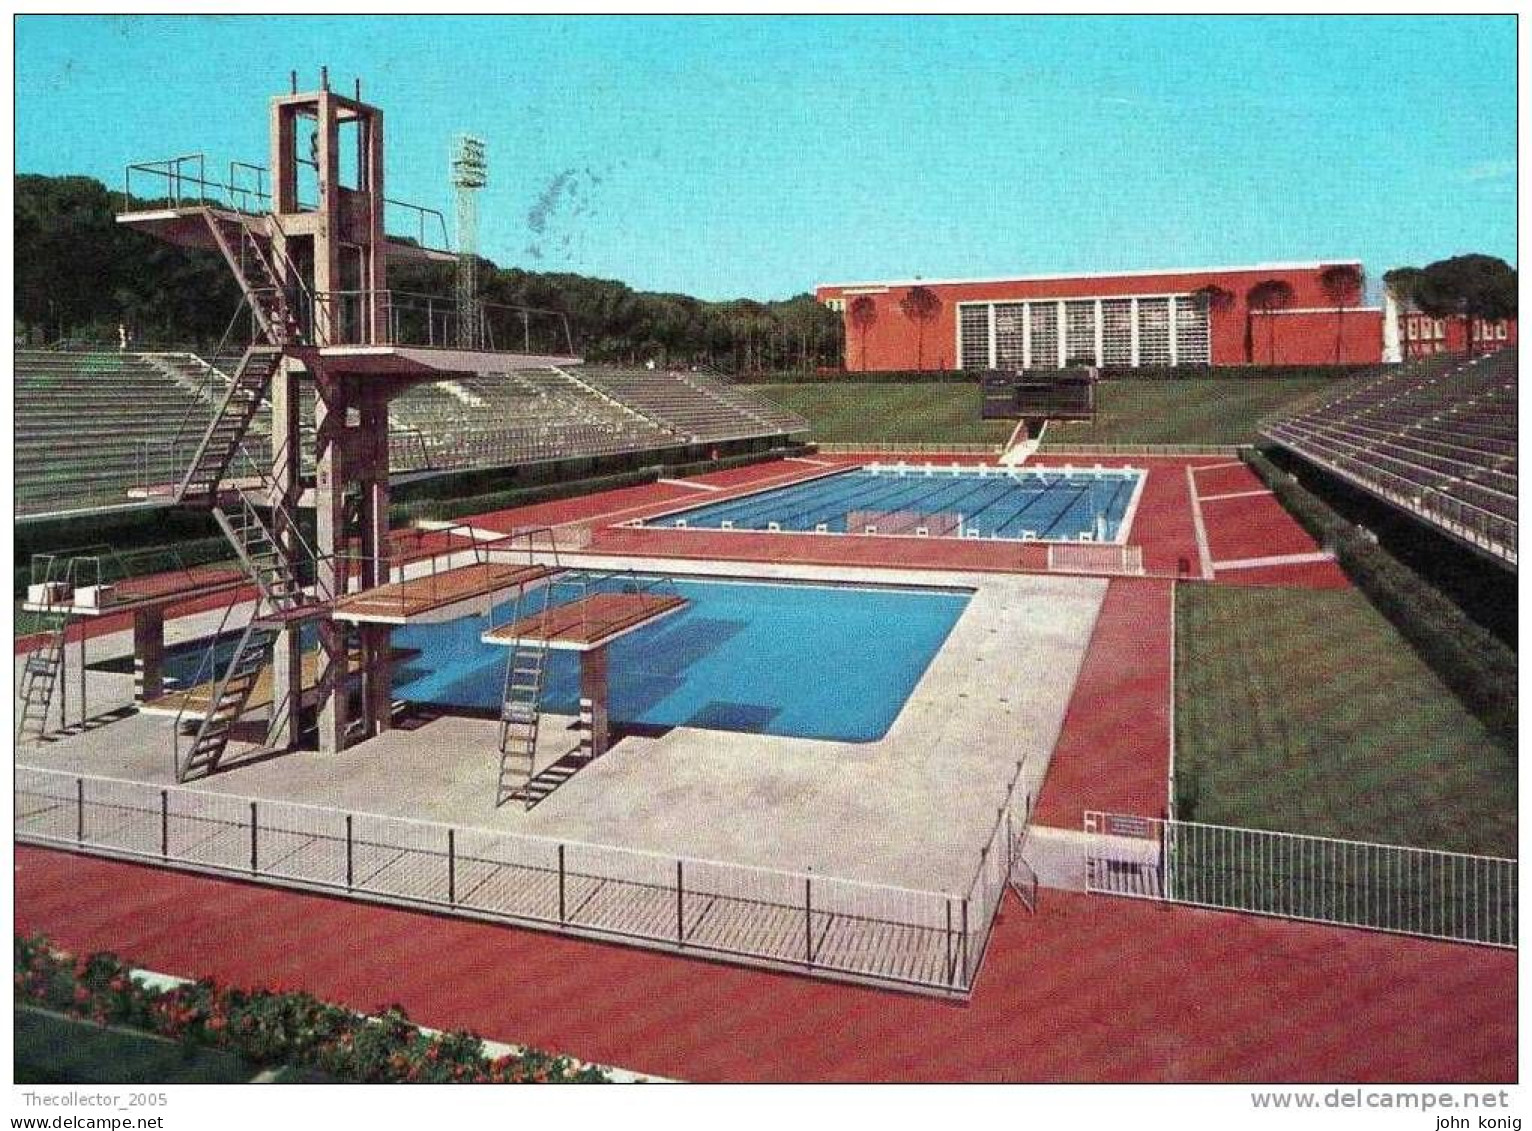 CARTOLINA - POSTCARD - CPT - POSTKARTE - ROMA - FORO ITALICO (1960) - Stadi & Strutture Sportive